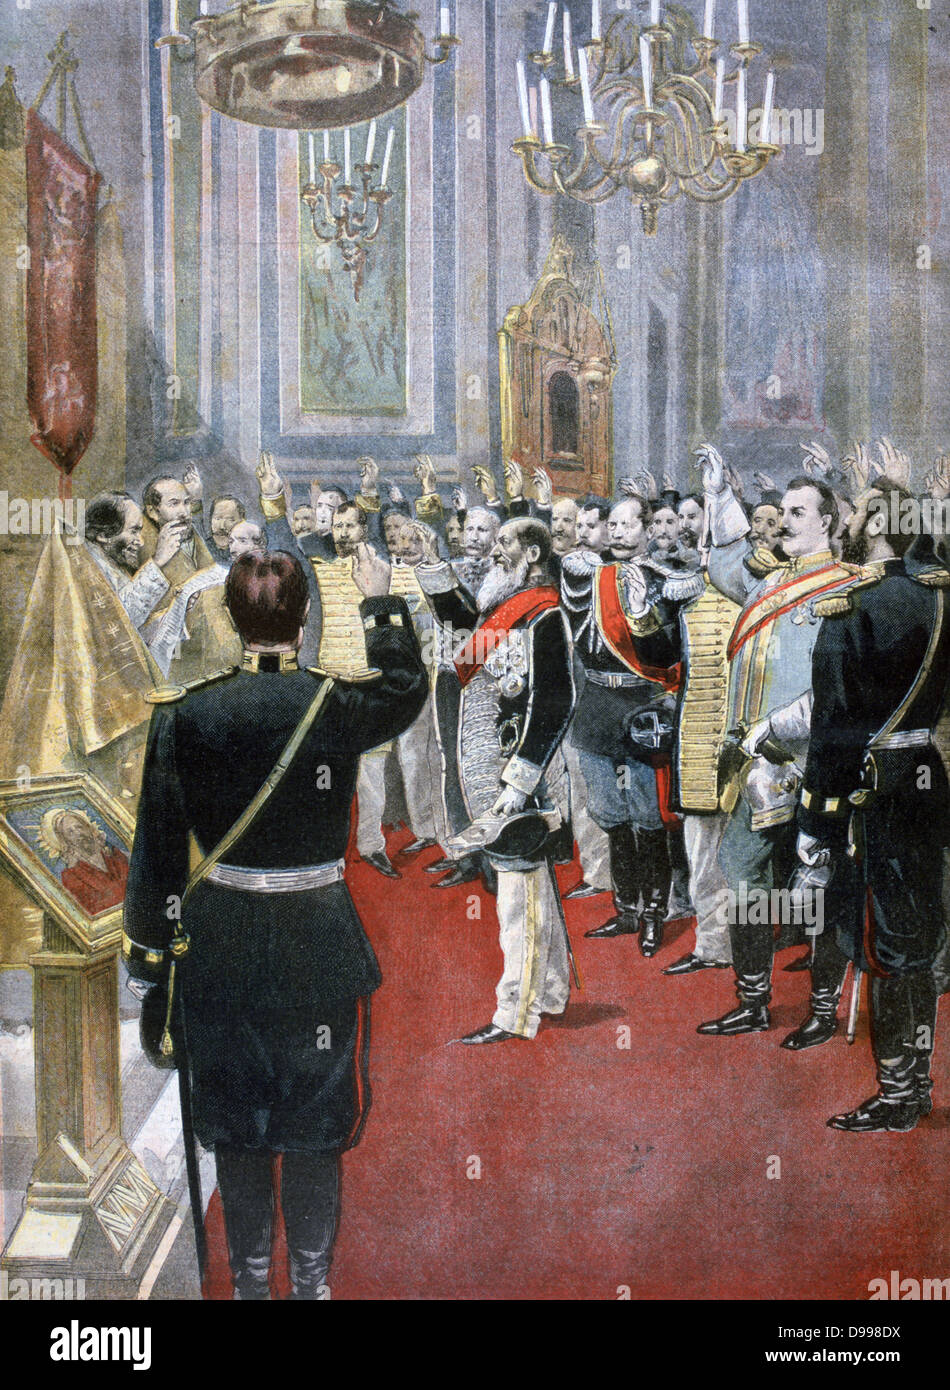 Der neue Zar Nicholas II, in der russischen Kirche, Paris schwören Treue.  Von "Le Petit Journal", Paris, 18. November 1894. Stockfoto